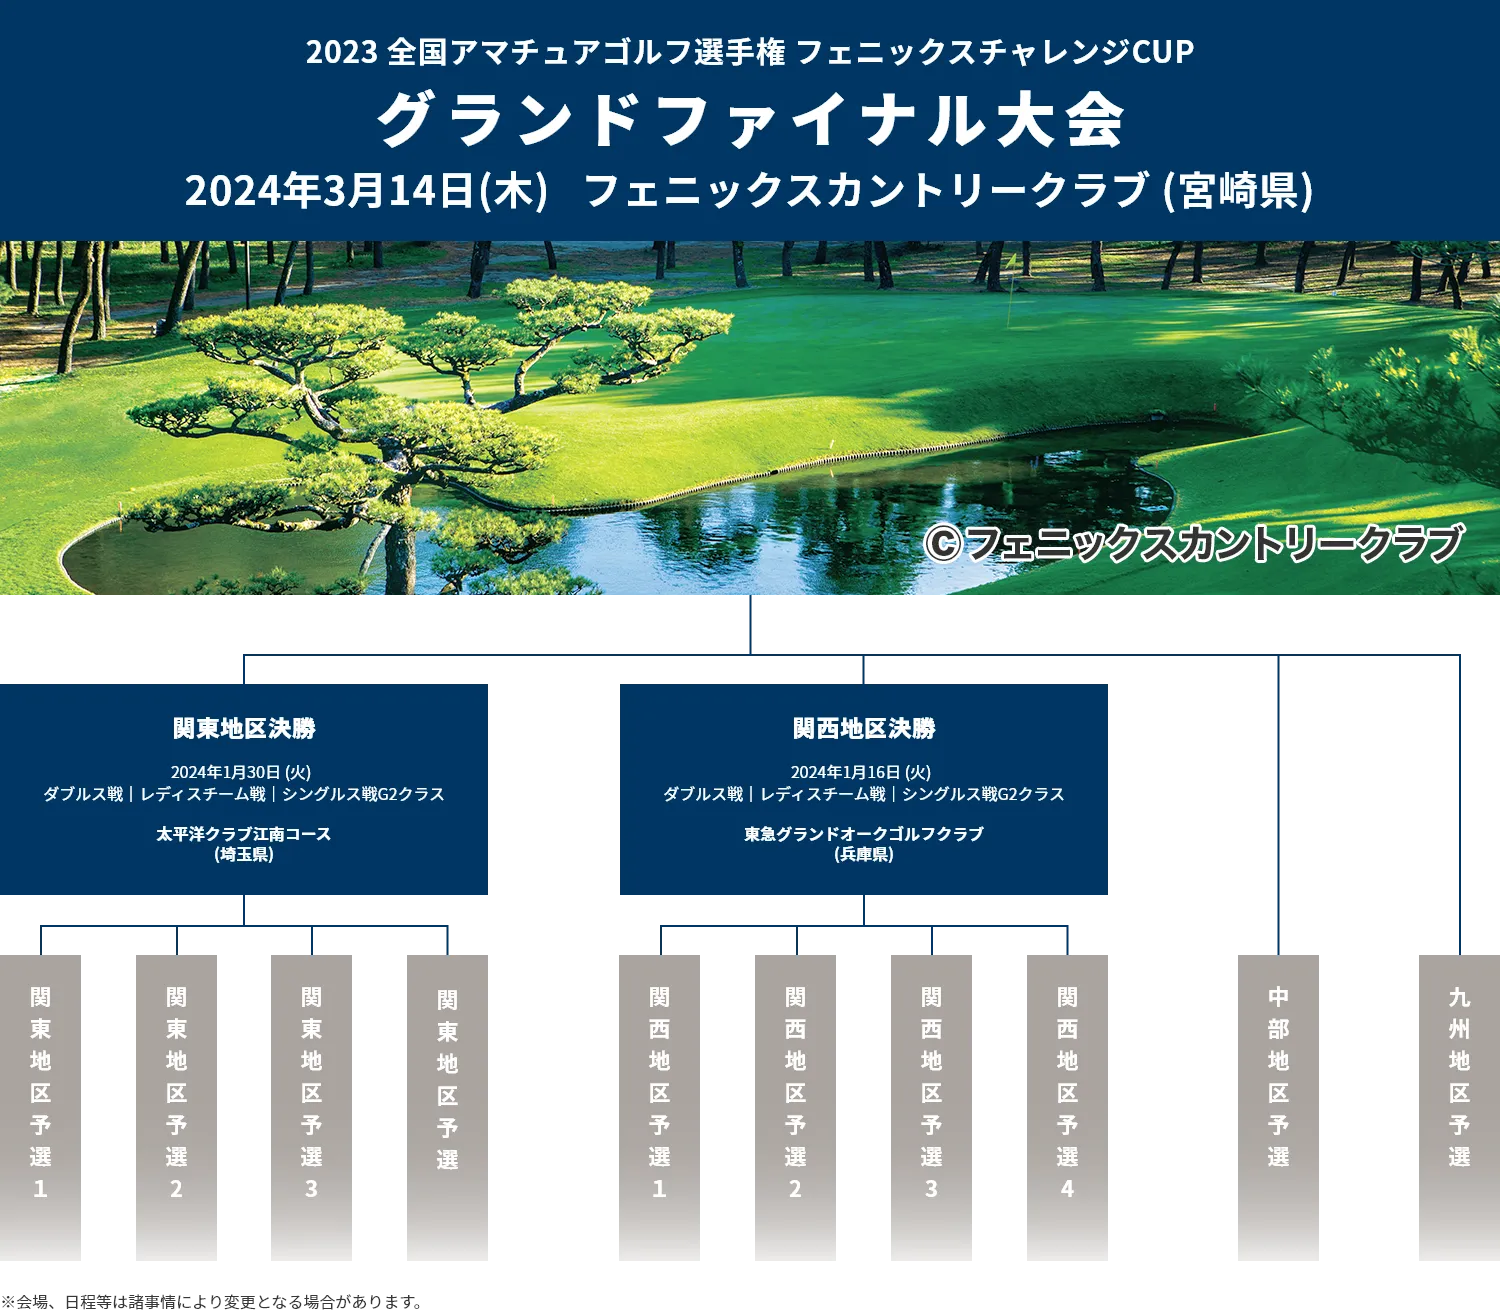 2023全国アマチュアゴルフ選手権フェニックスチャレンジCUP_グランドファイナル大会_2024年3月14日(木)フェニックスカントリークラブ(宮崎県)